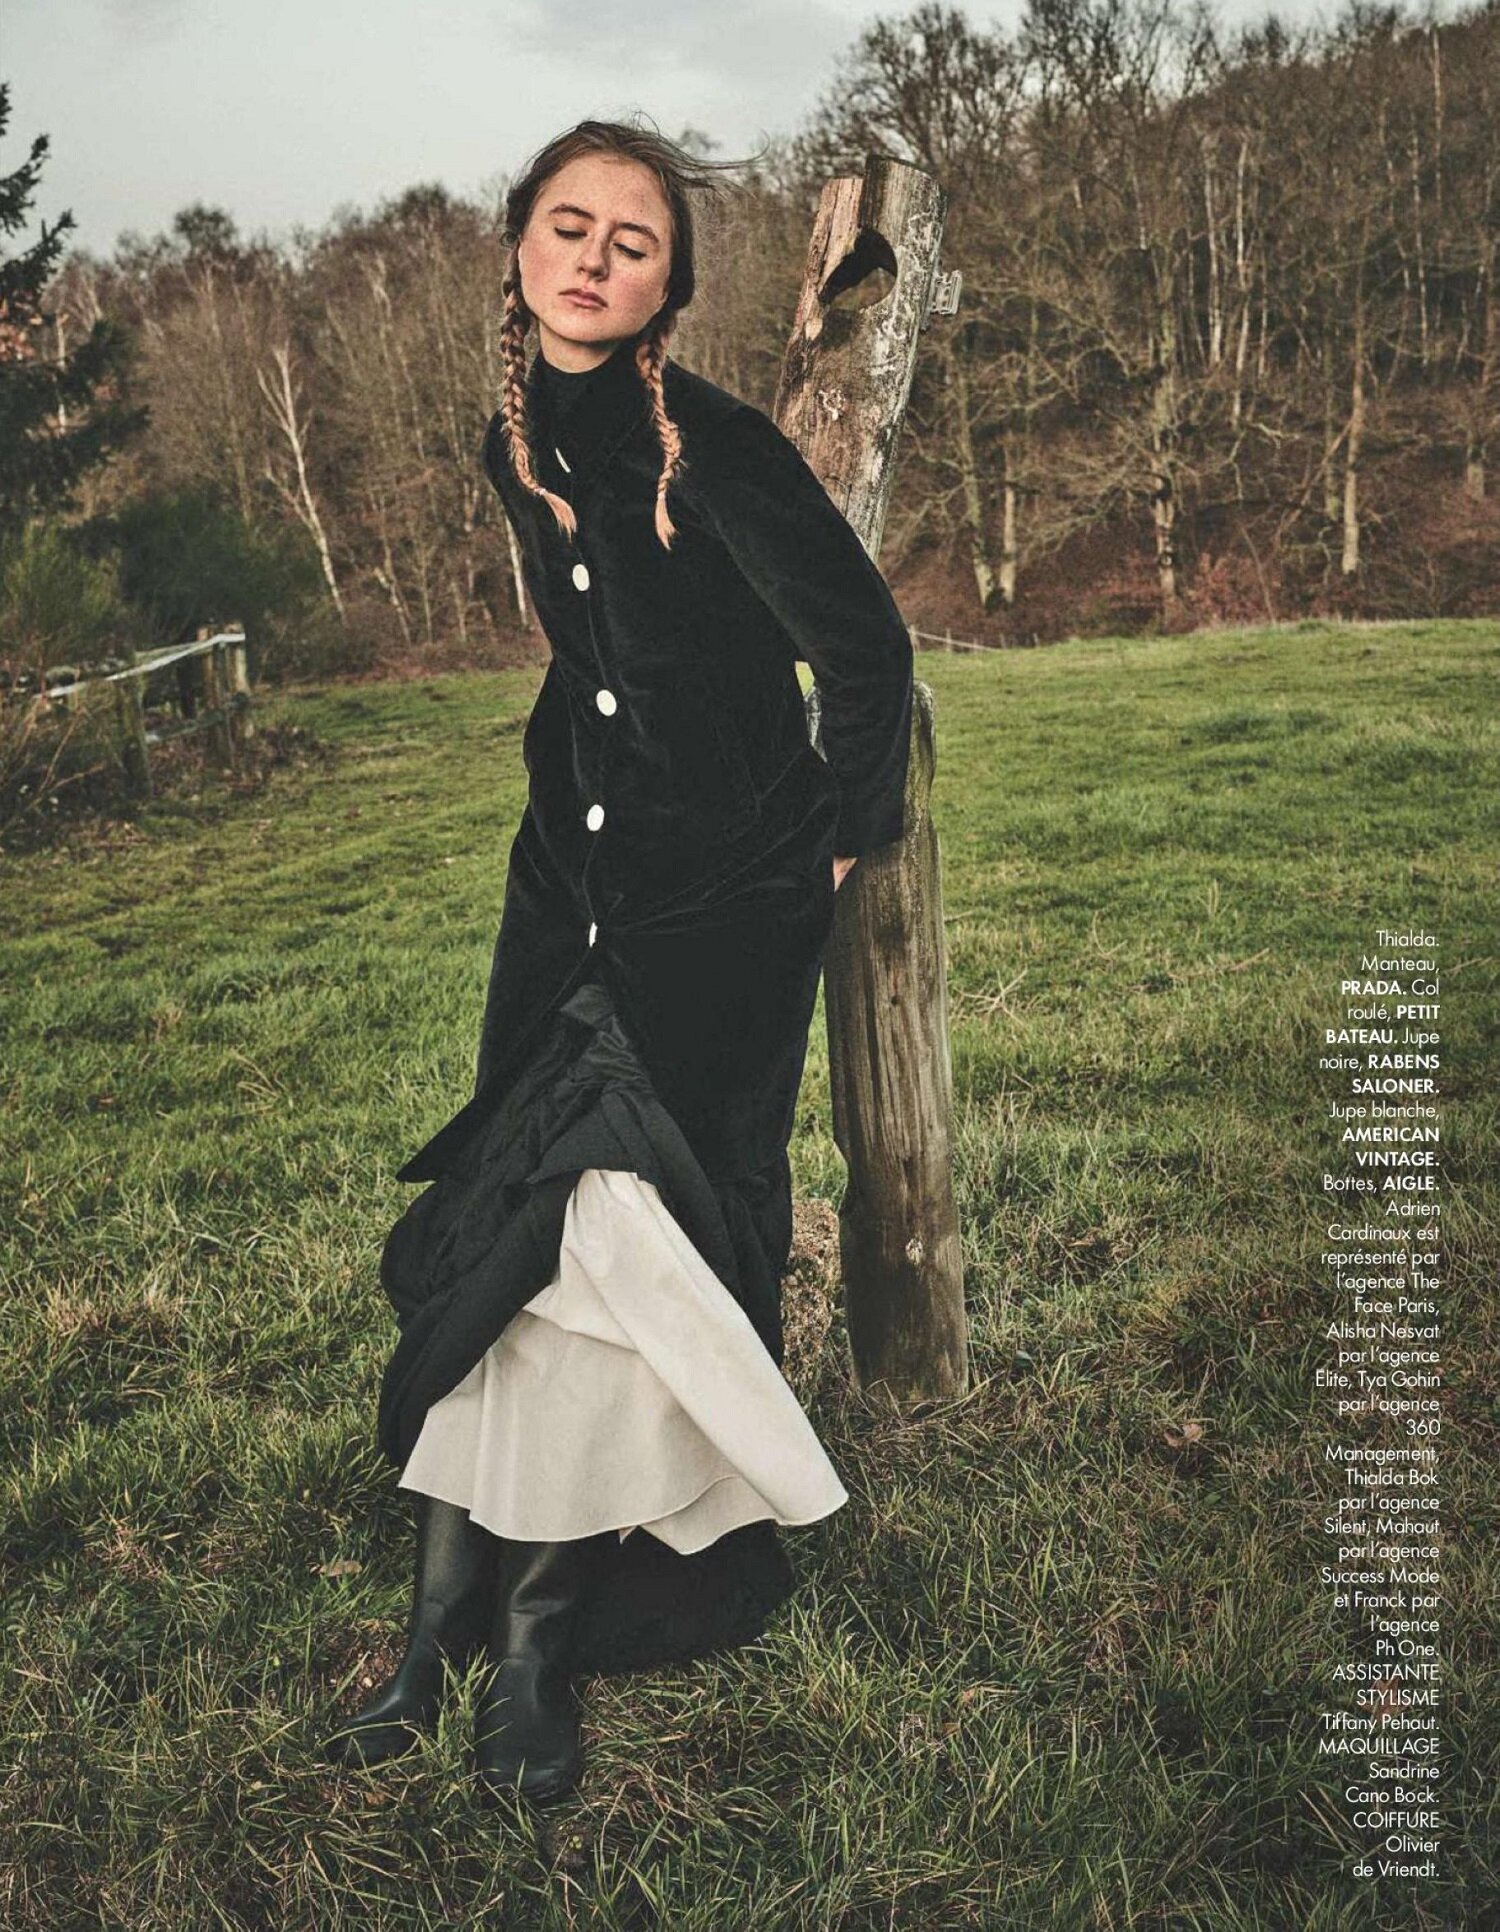 Johan Sandberg 'Belle Amish' for ELLE France May 7 (23).jpg